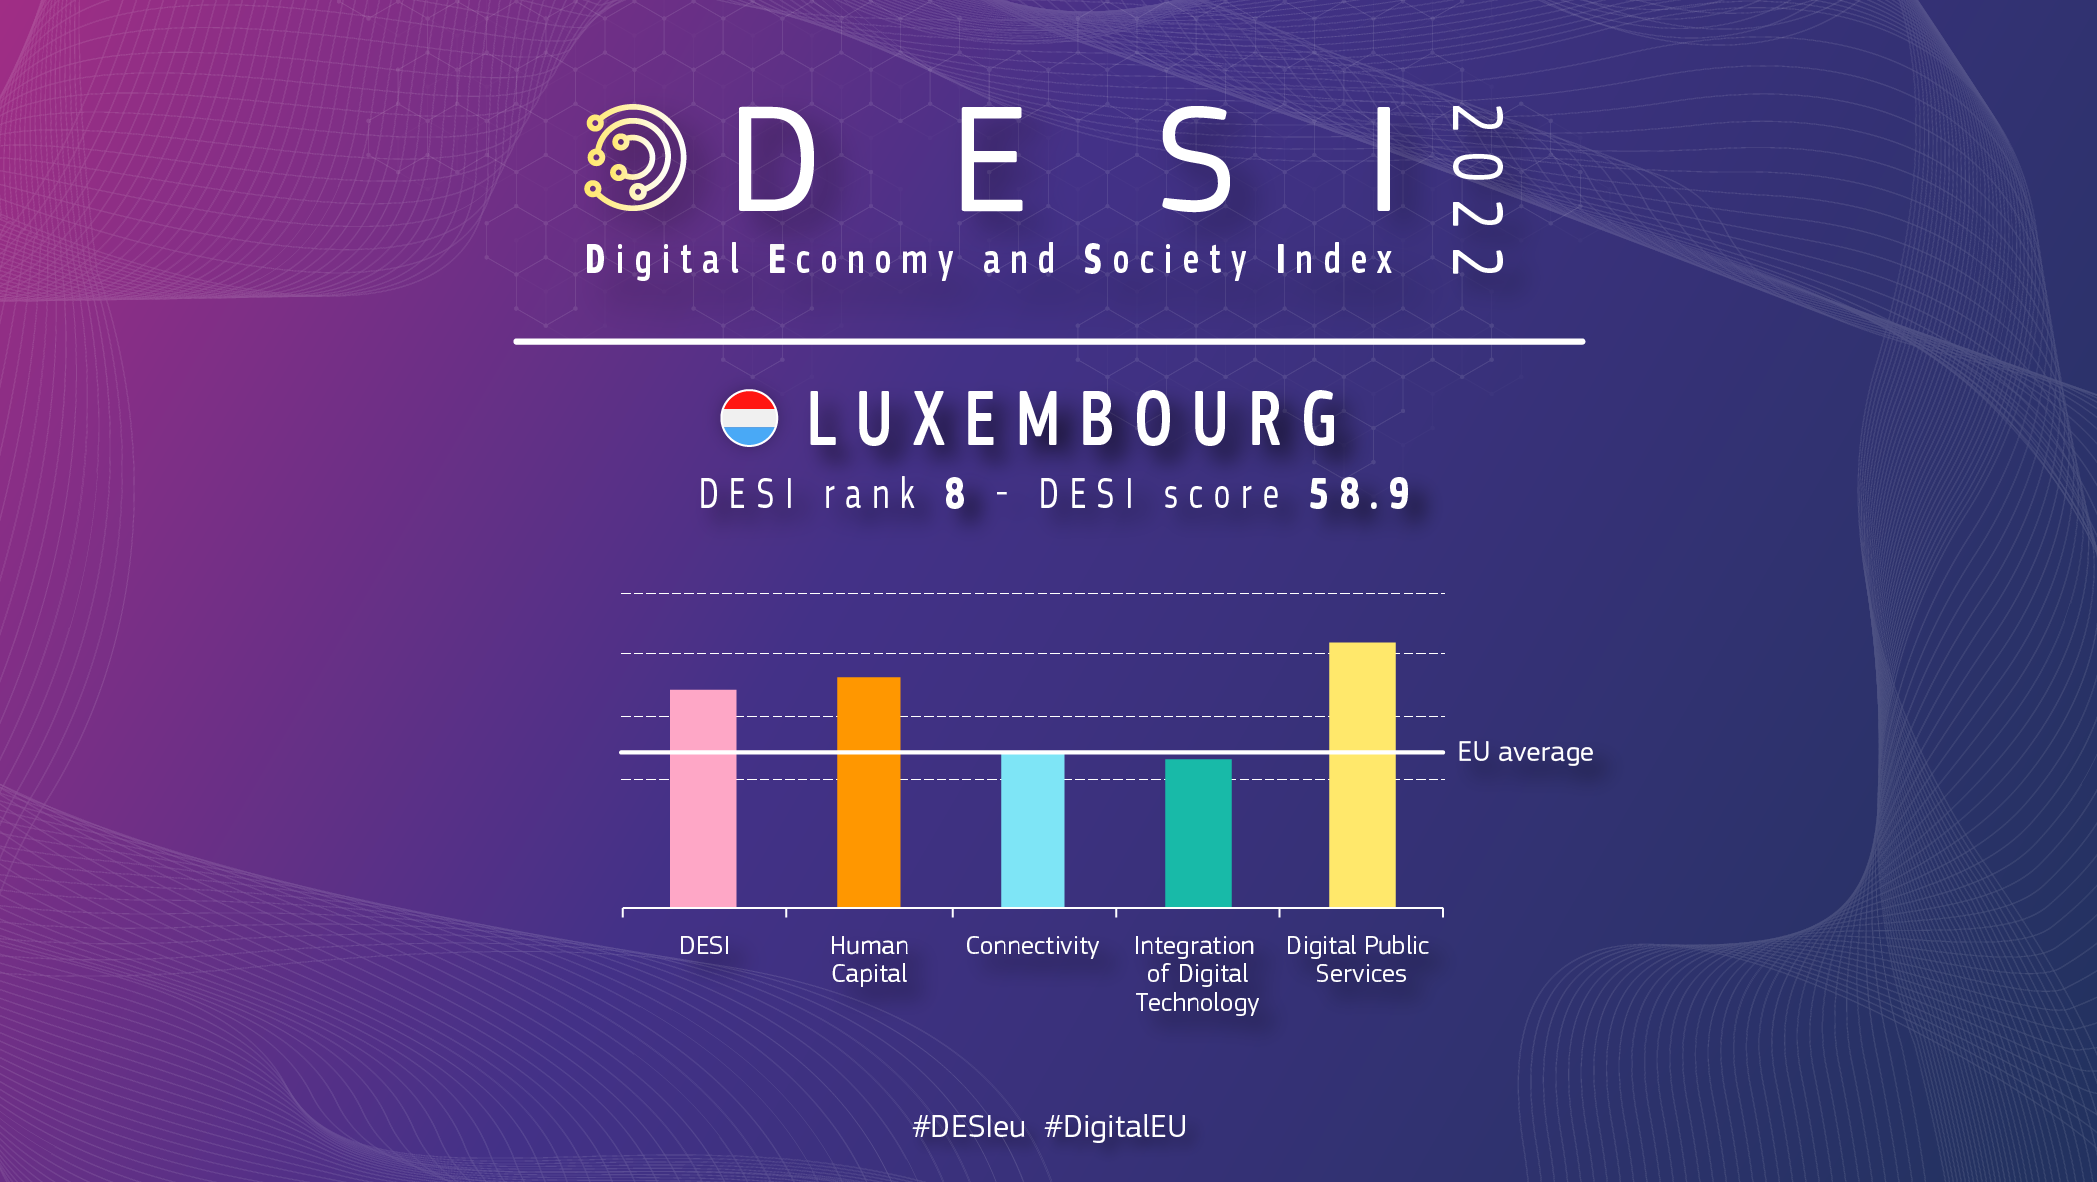 Grafisk oversigt over Luxembourg i DESI viser en placering på 8 med en score på 58,9